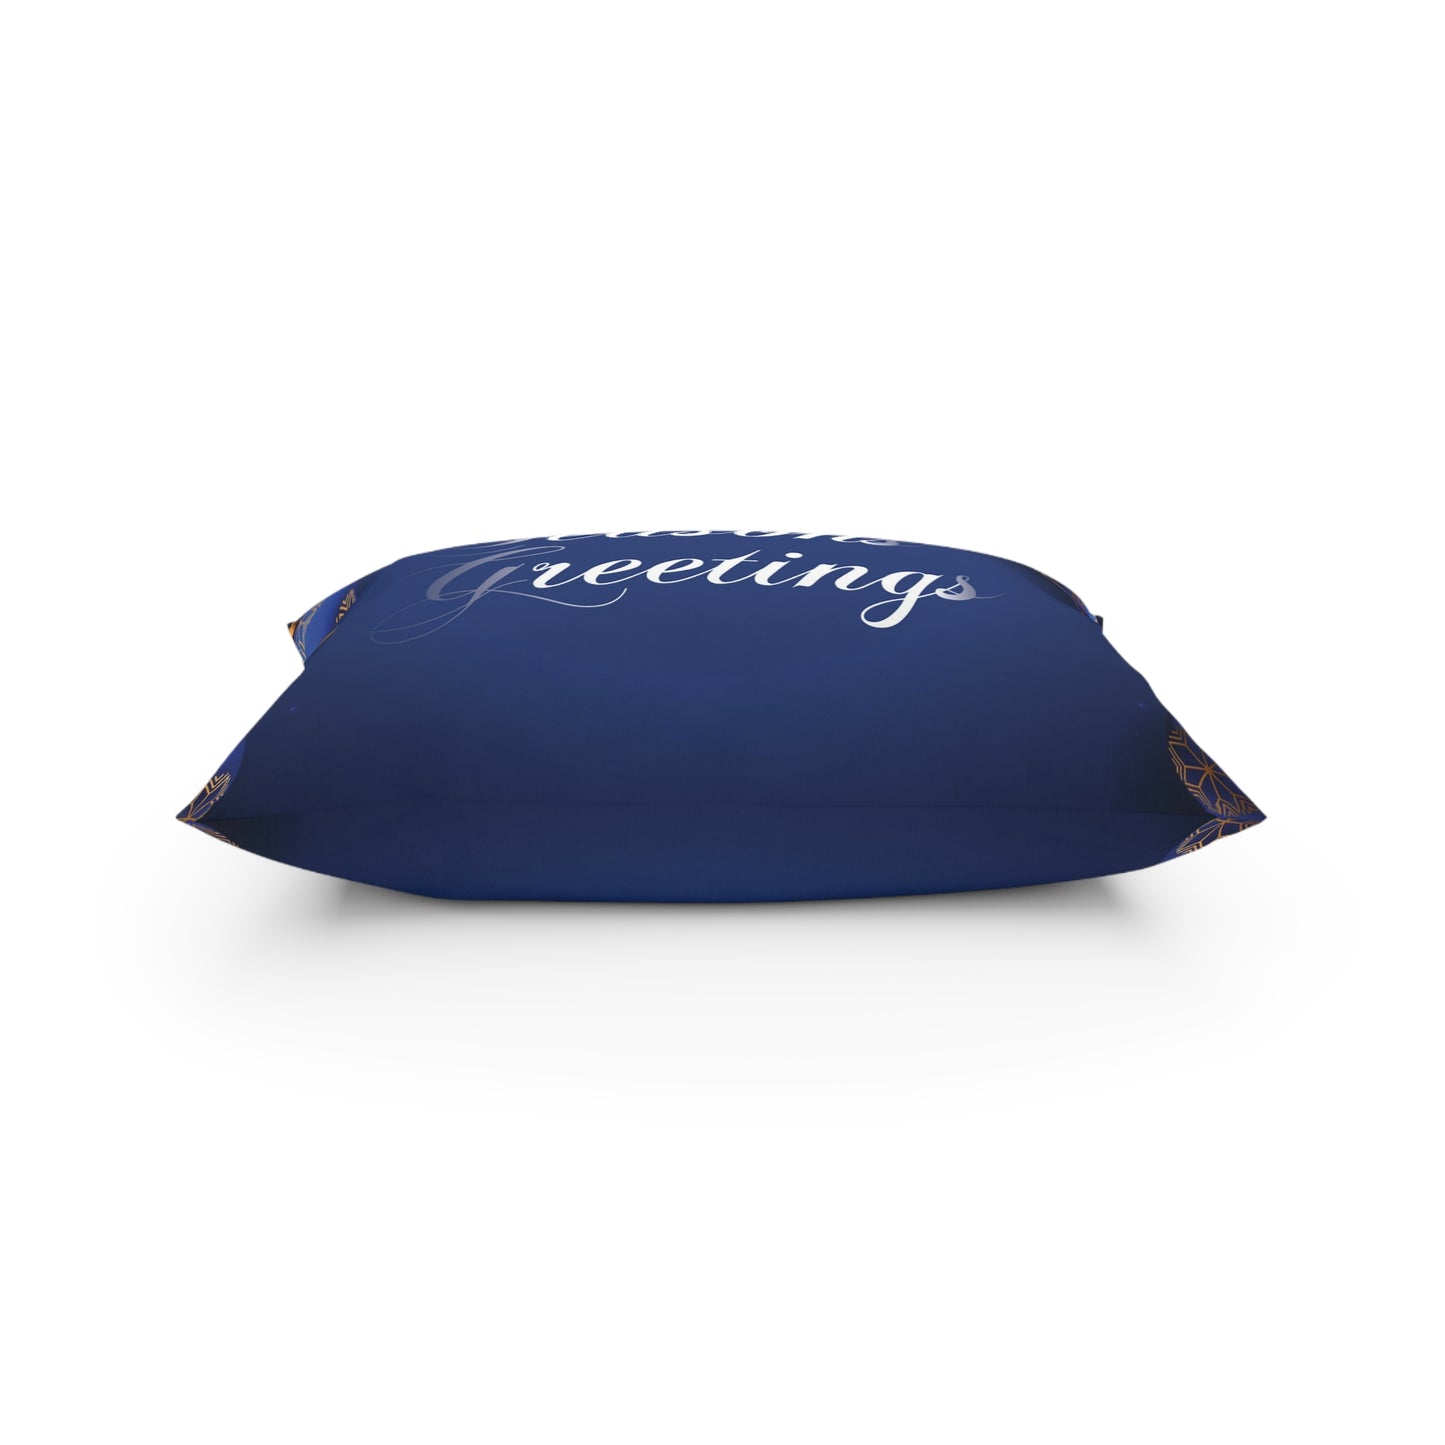 Hoilday Broadcloth Pillow, Dark Blue